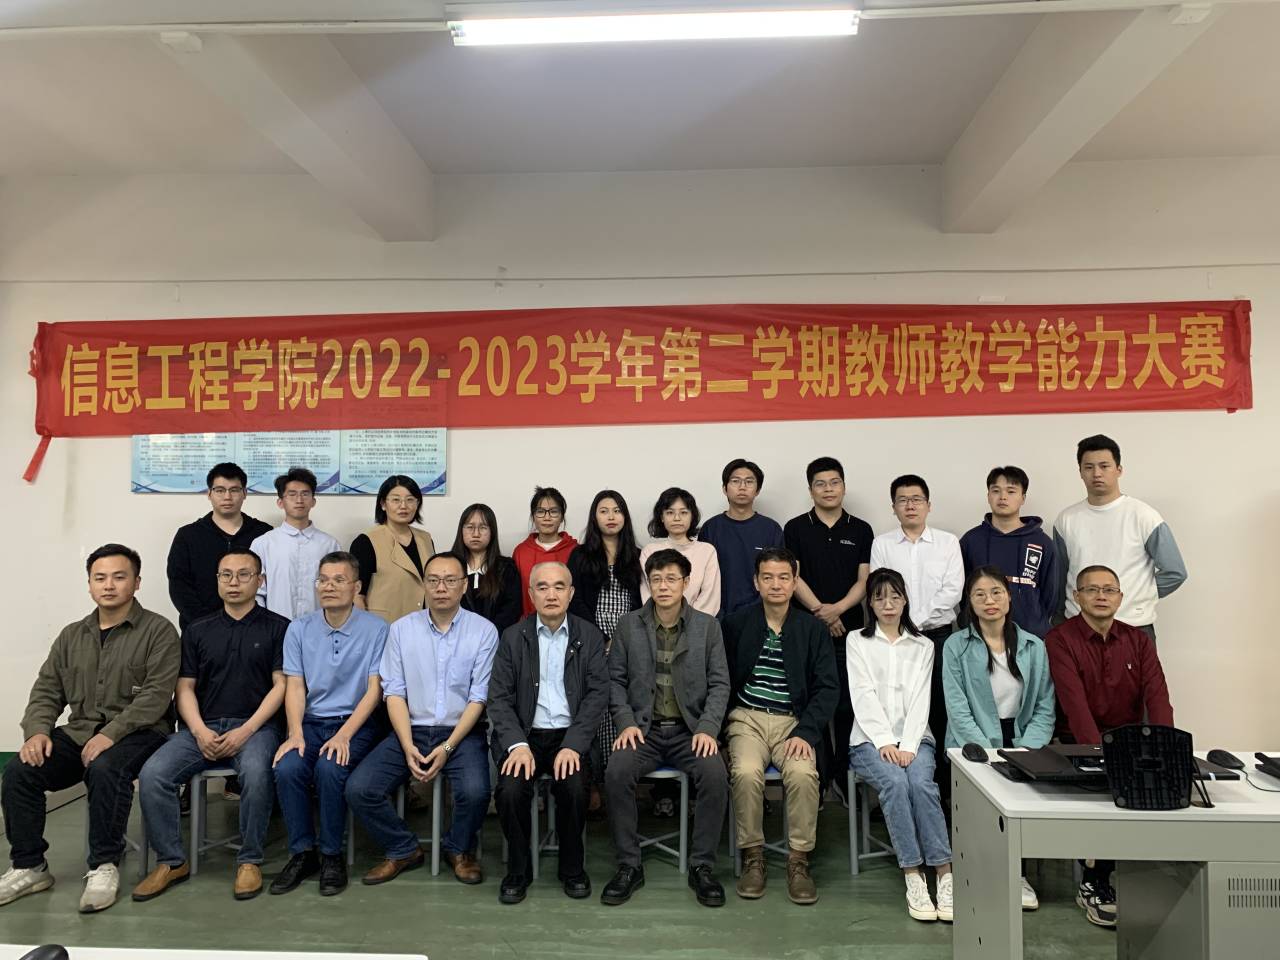 信息工程学院2022-2023年第二学期教师教学能力比赛.jpg